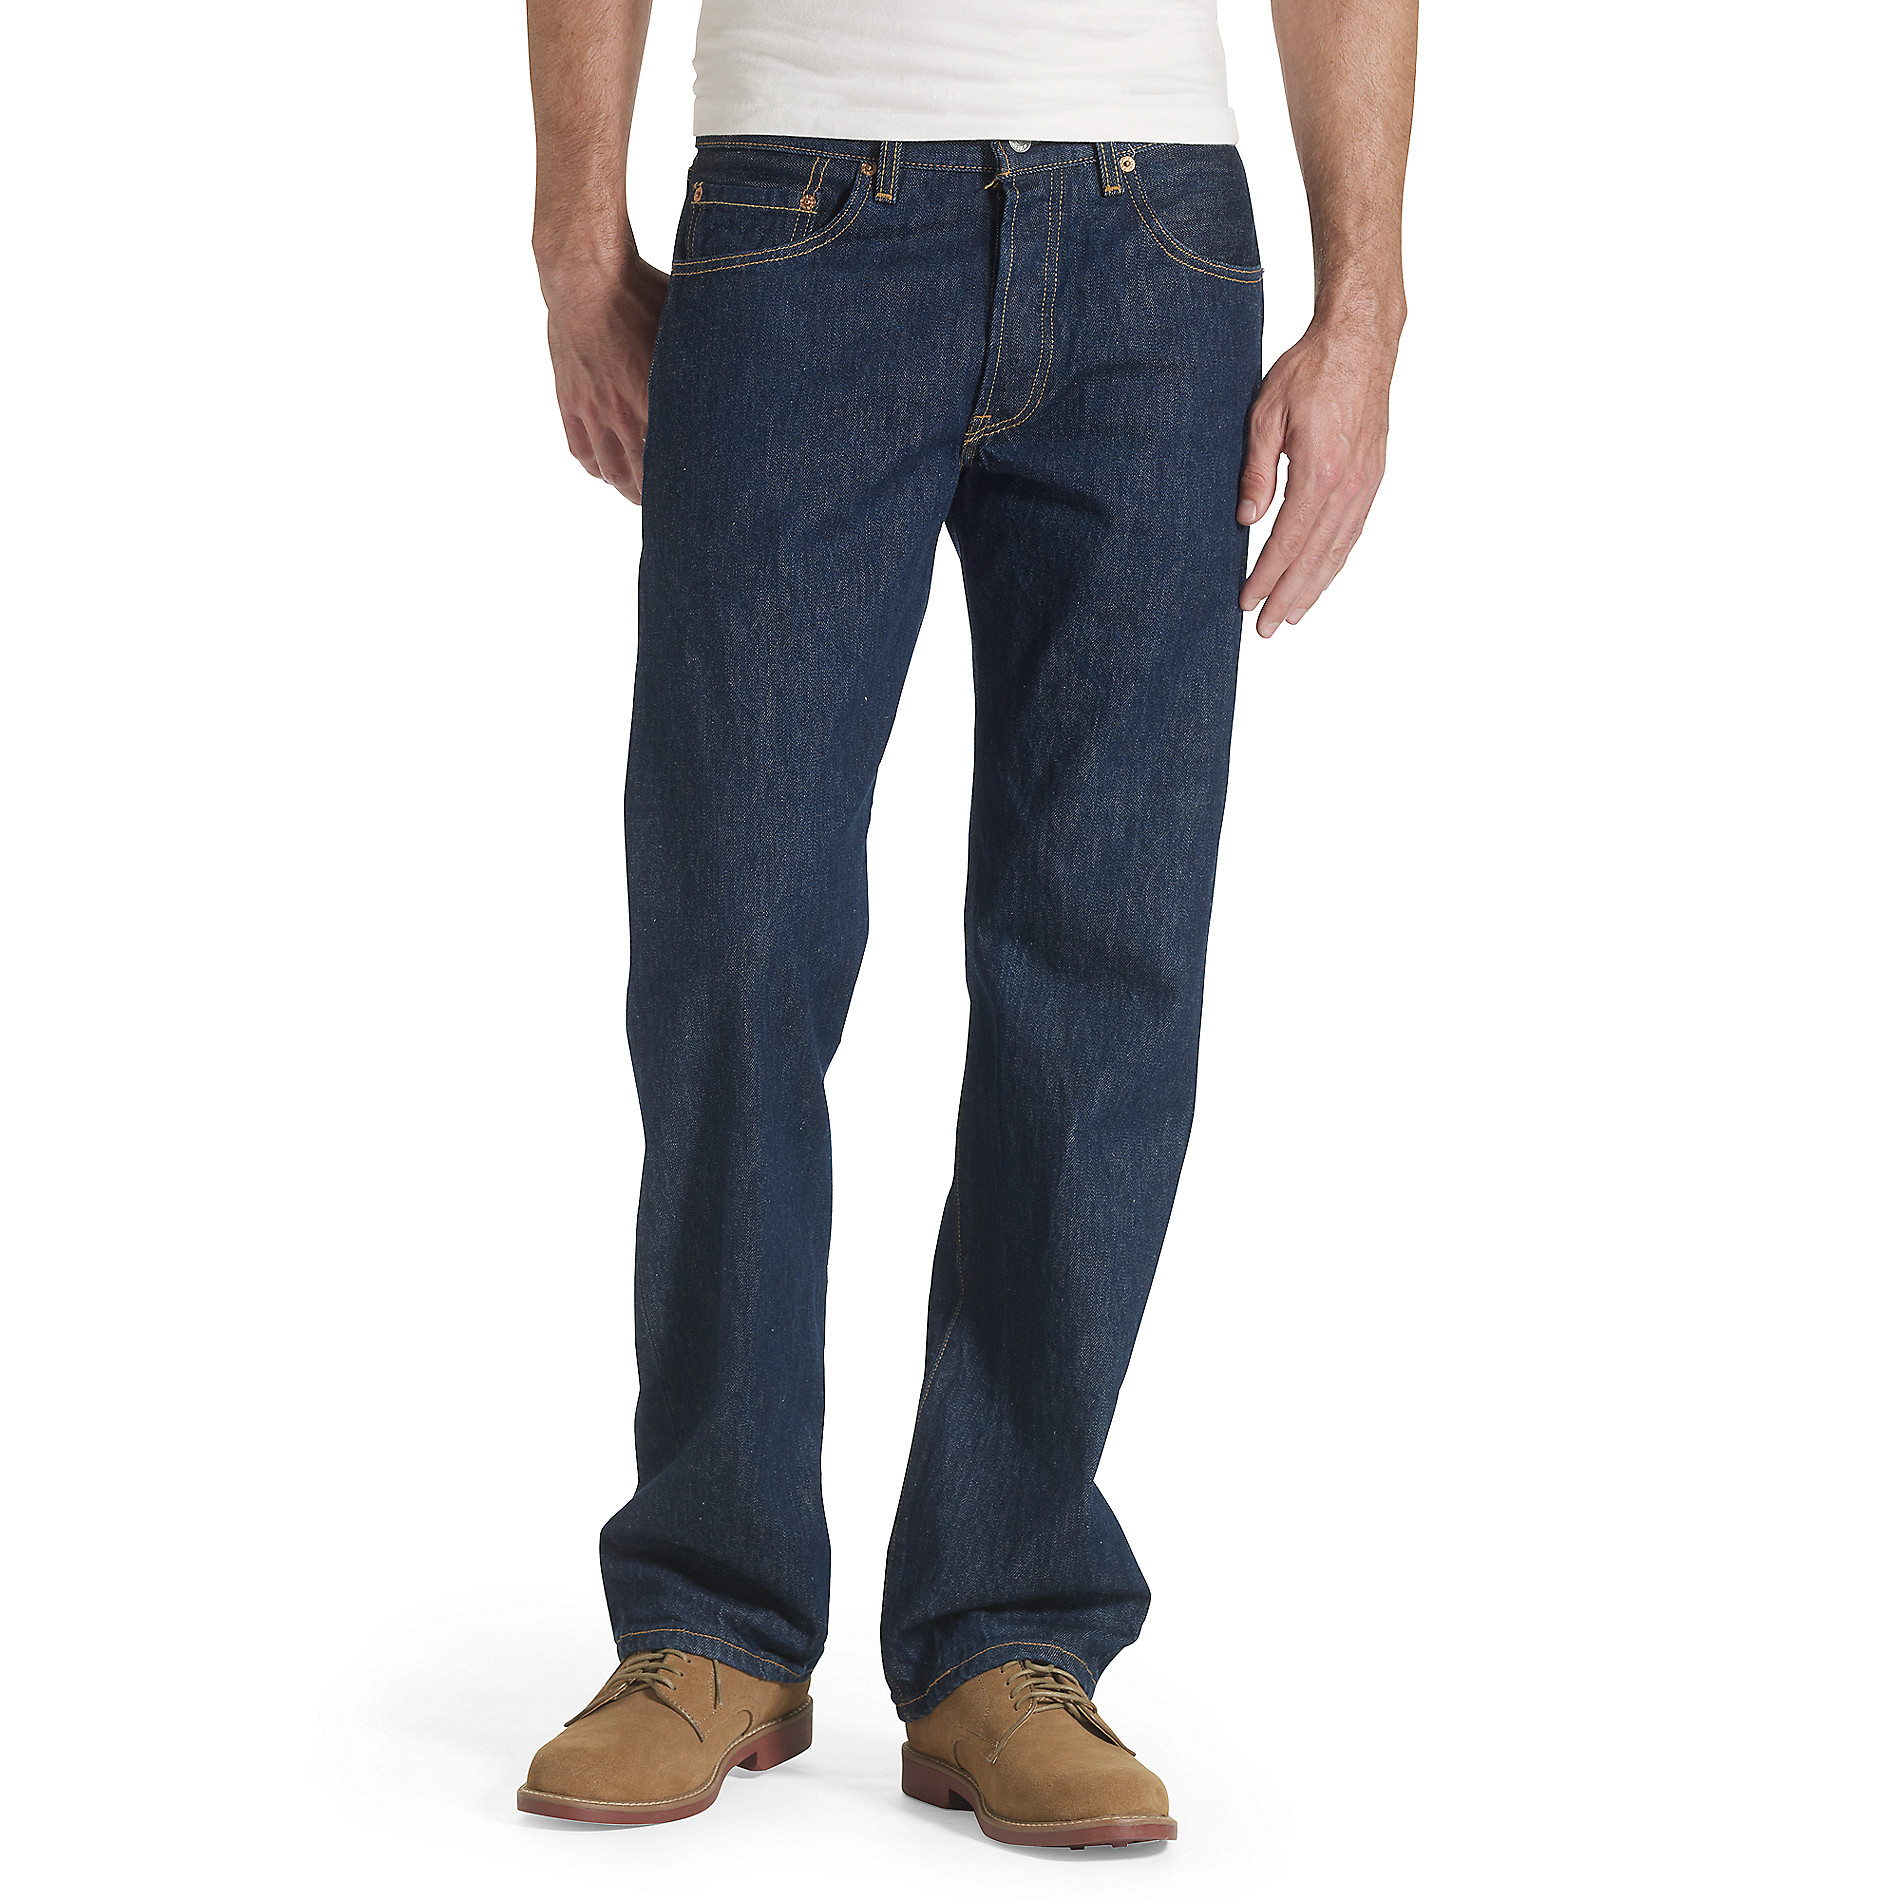 Levi's Men's 501 Original Fit Jeans - Sears